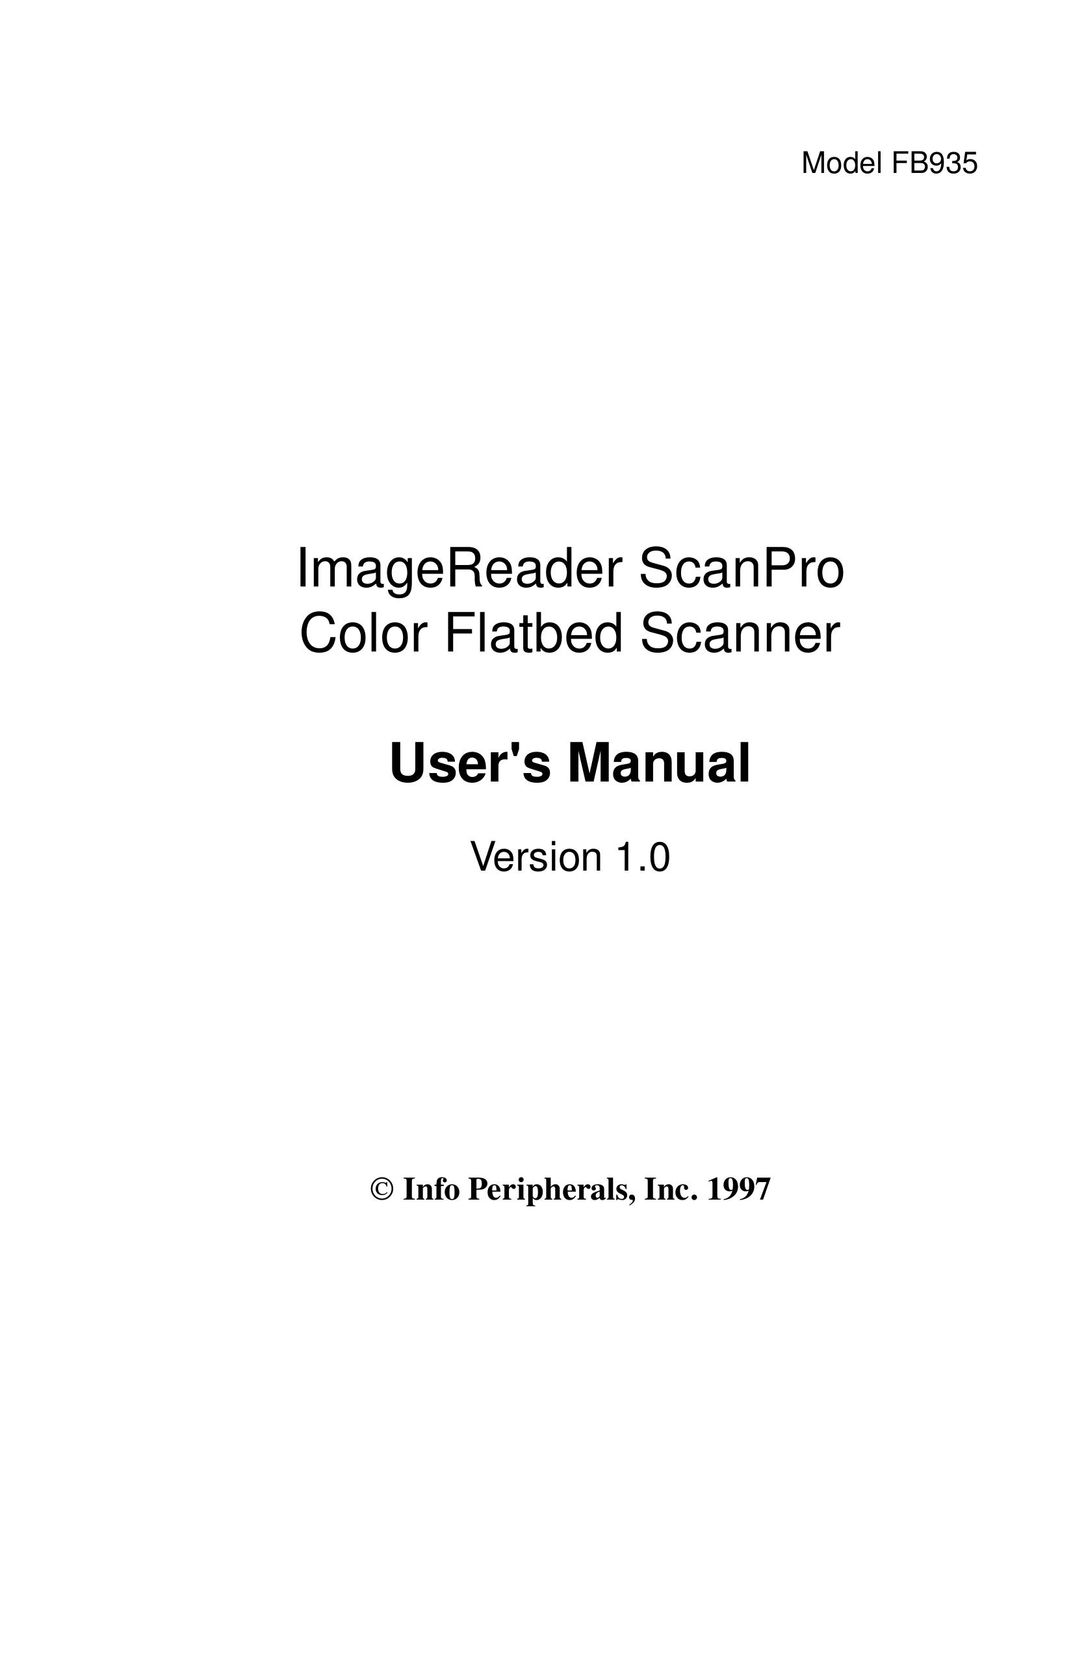 IBM Ricoh ScanPro Scanner User Manual